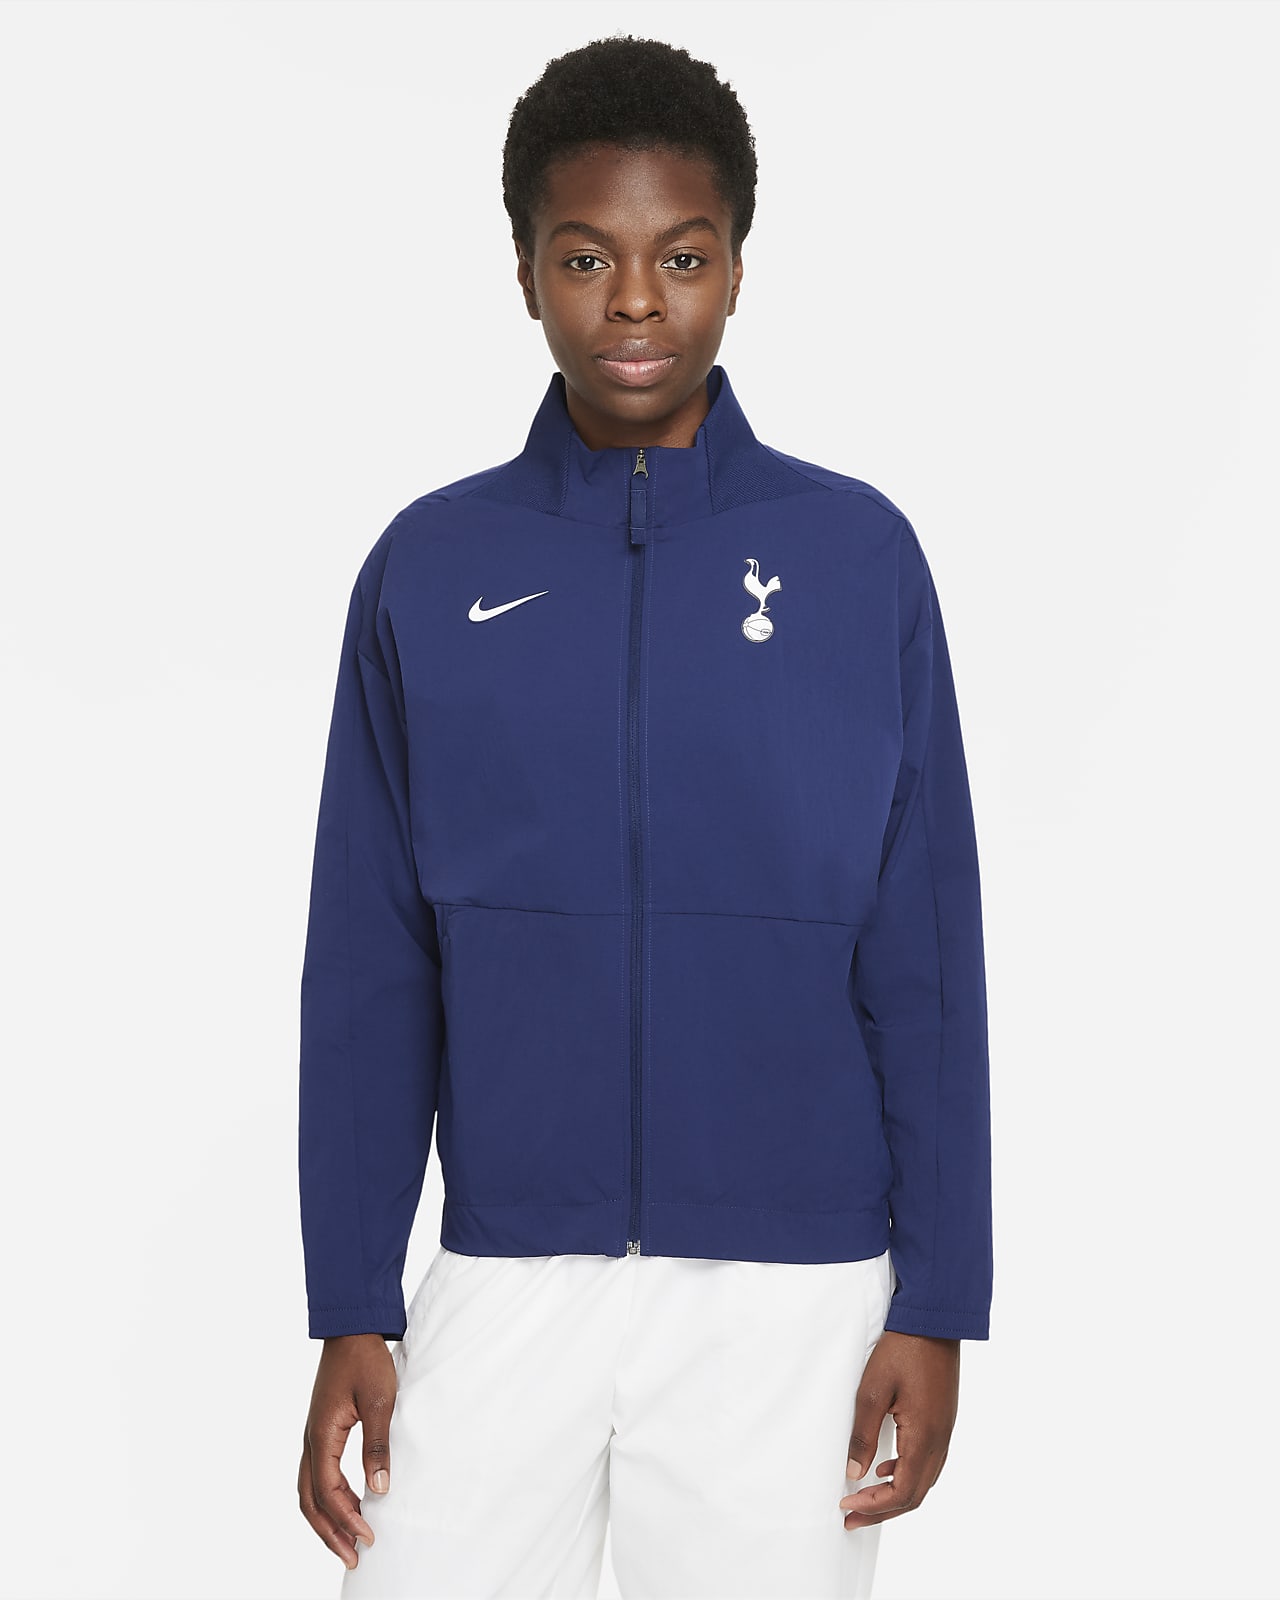 Tottenham Hotspur Women's Nike Dri-FIT Football Jacket